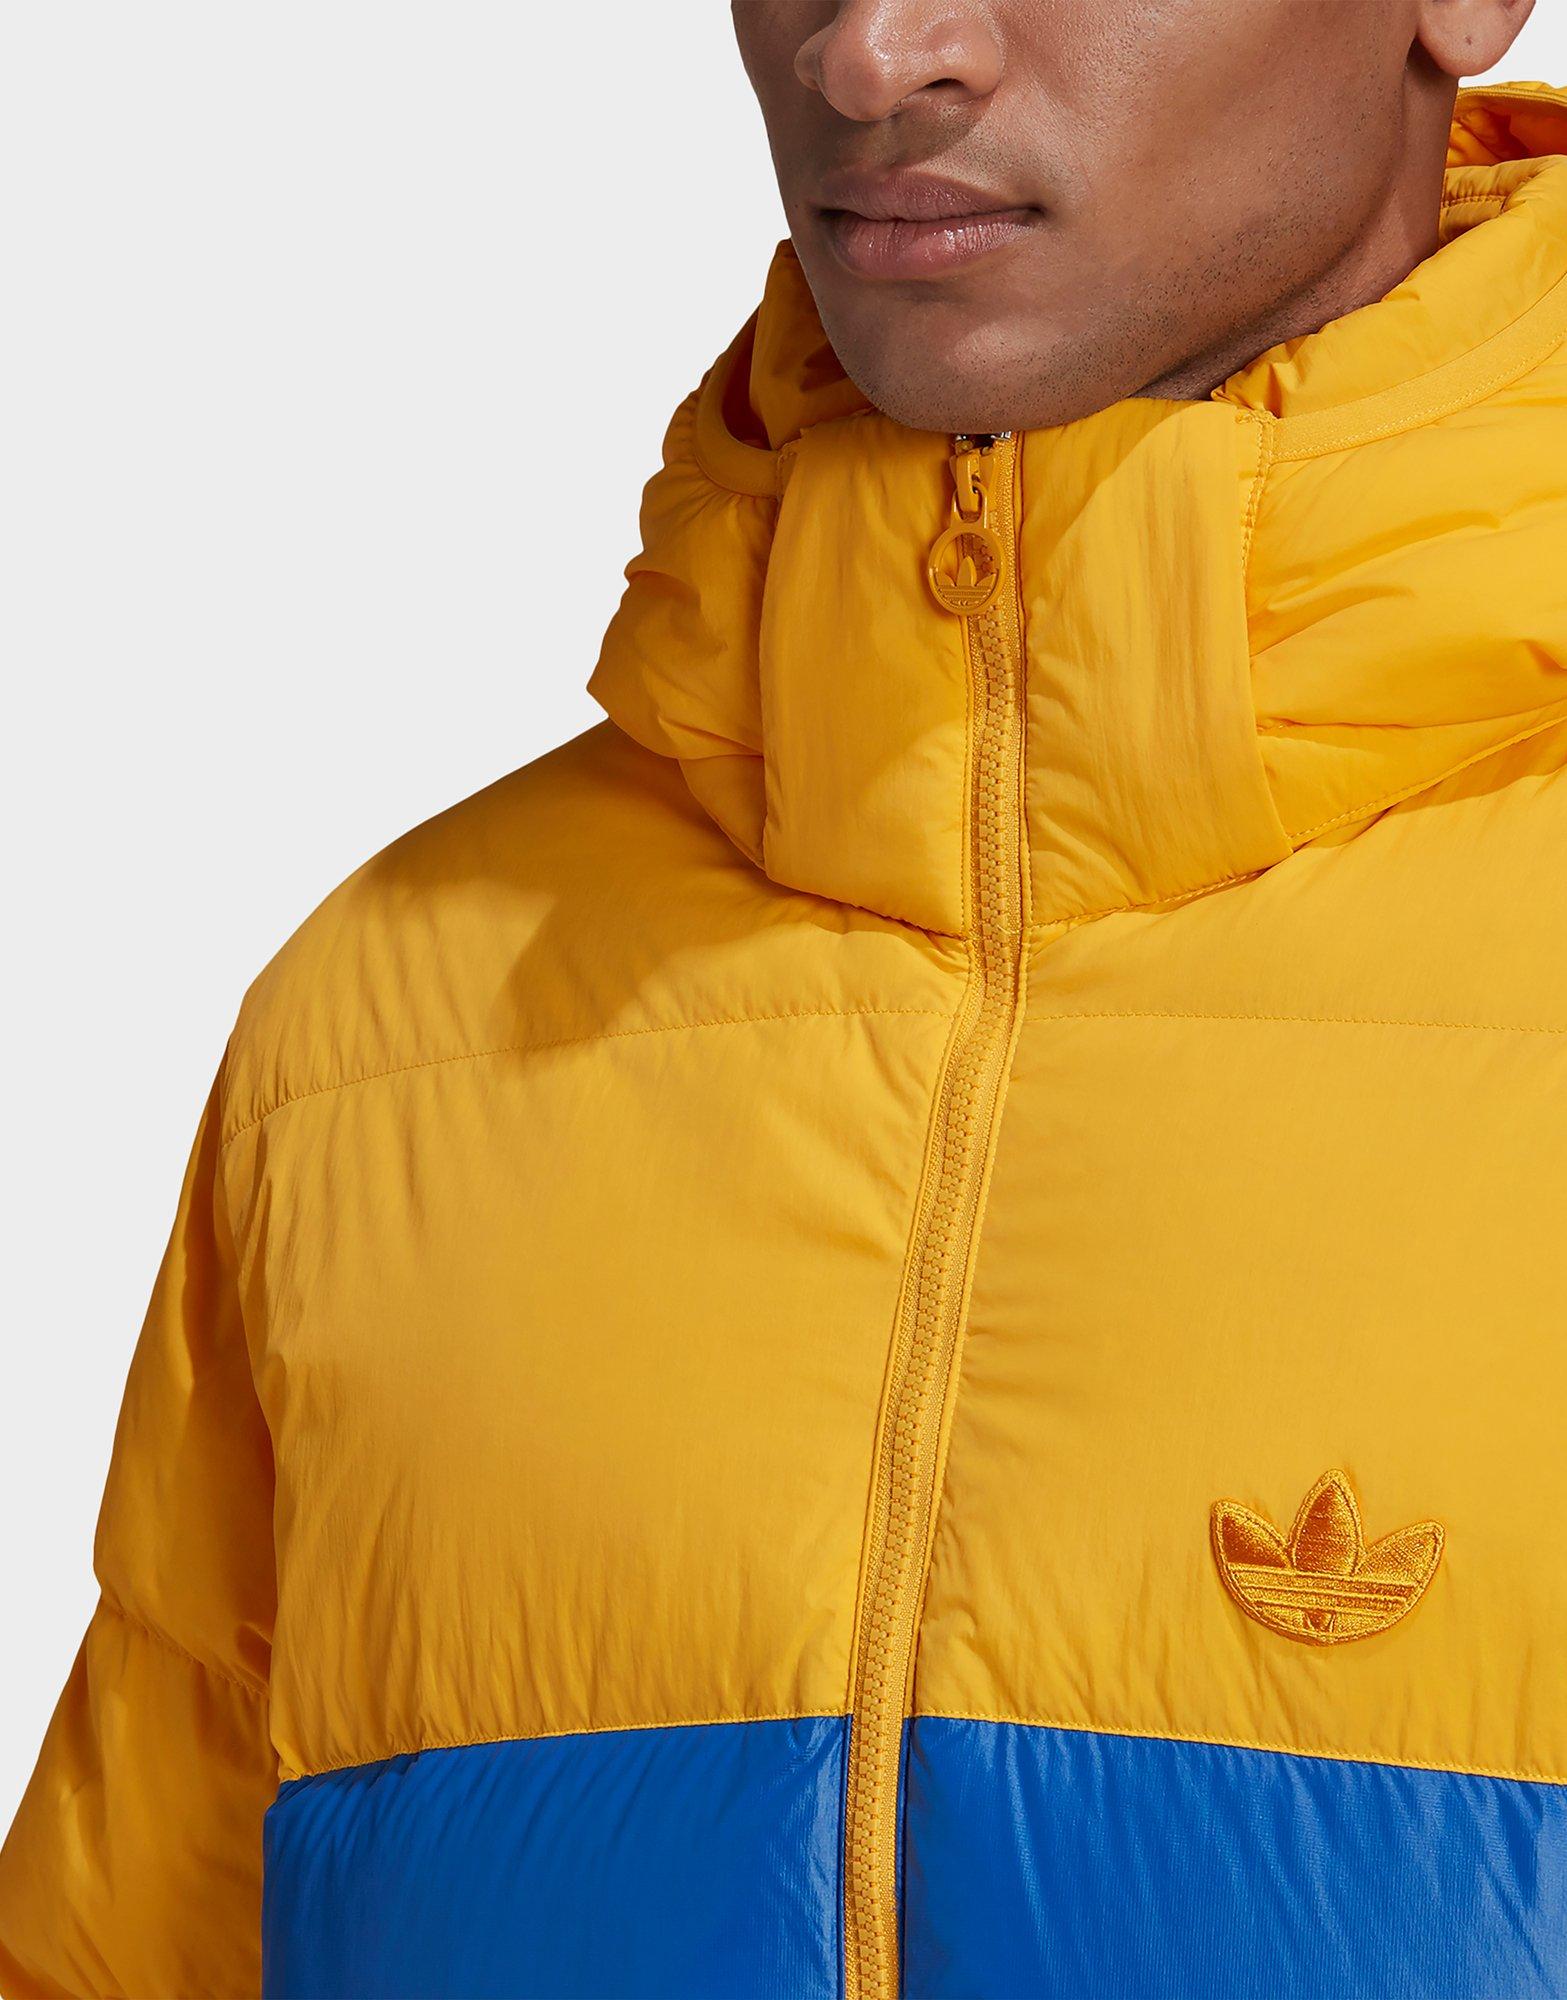 yellow adidas puffer jacket